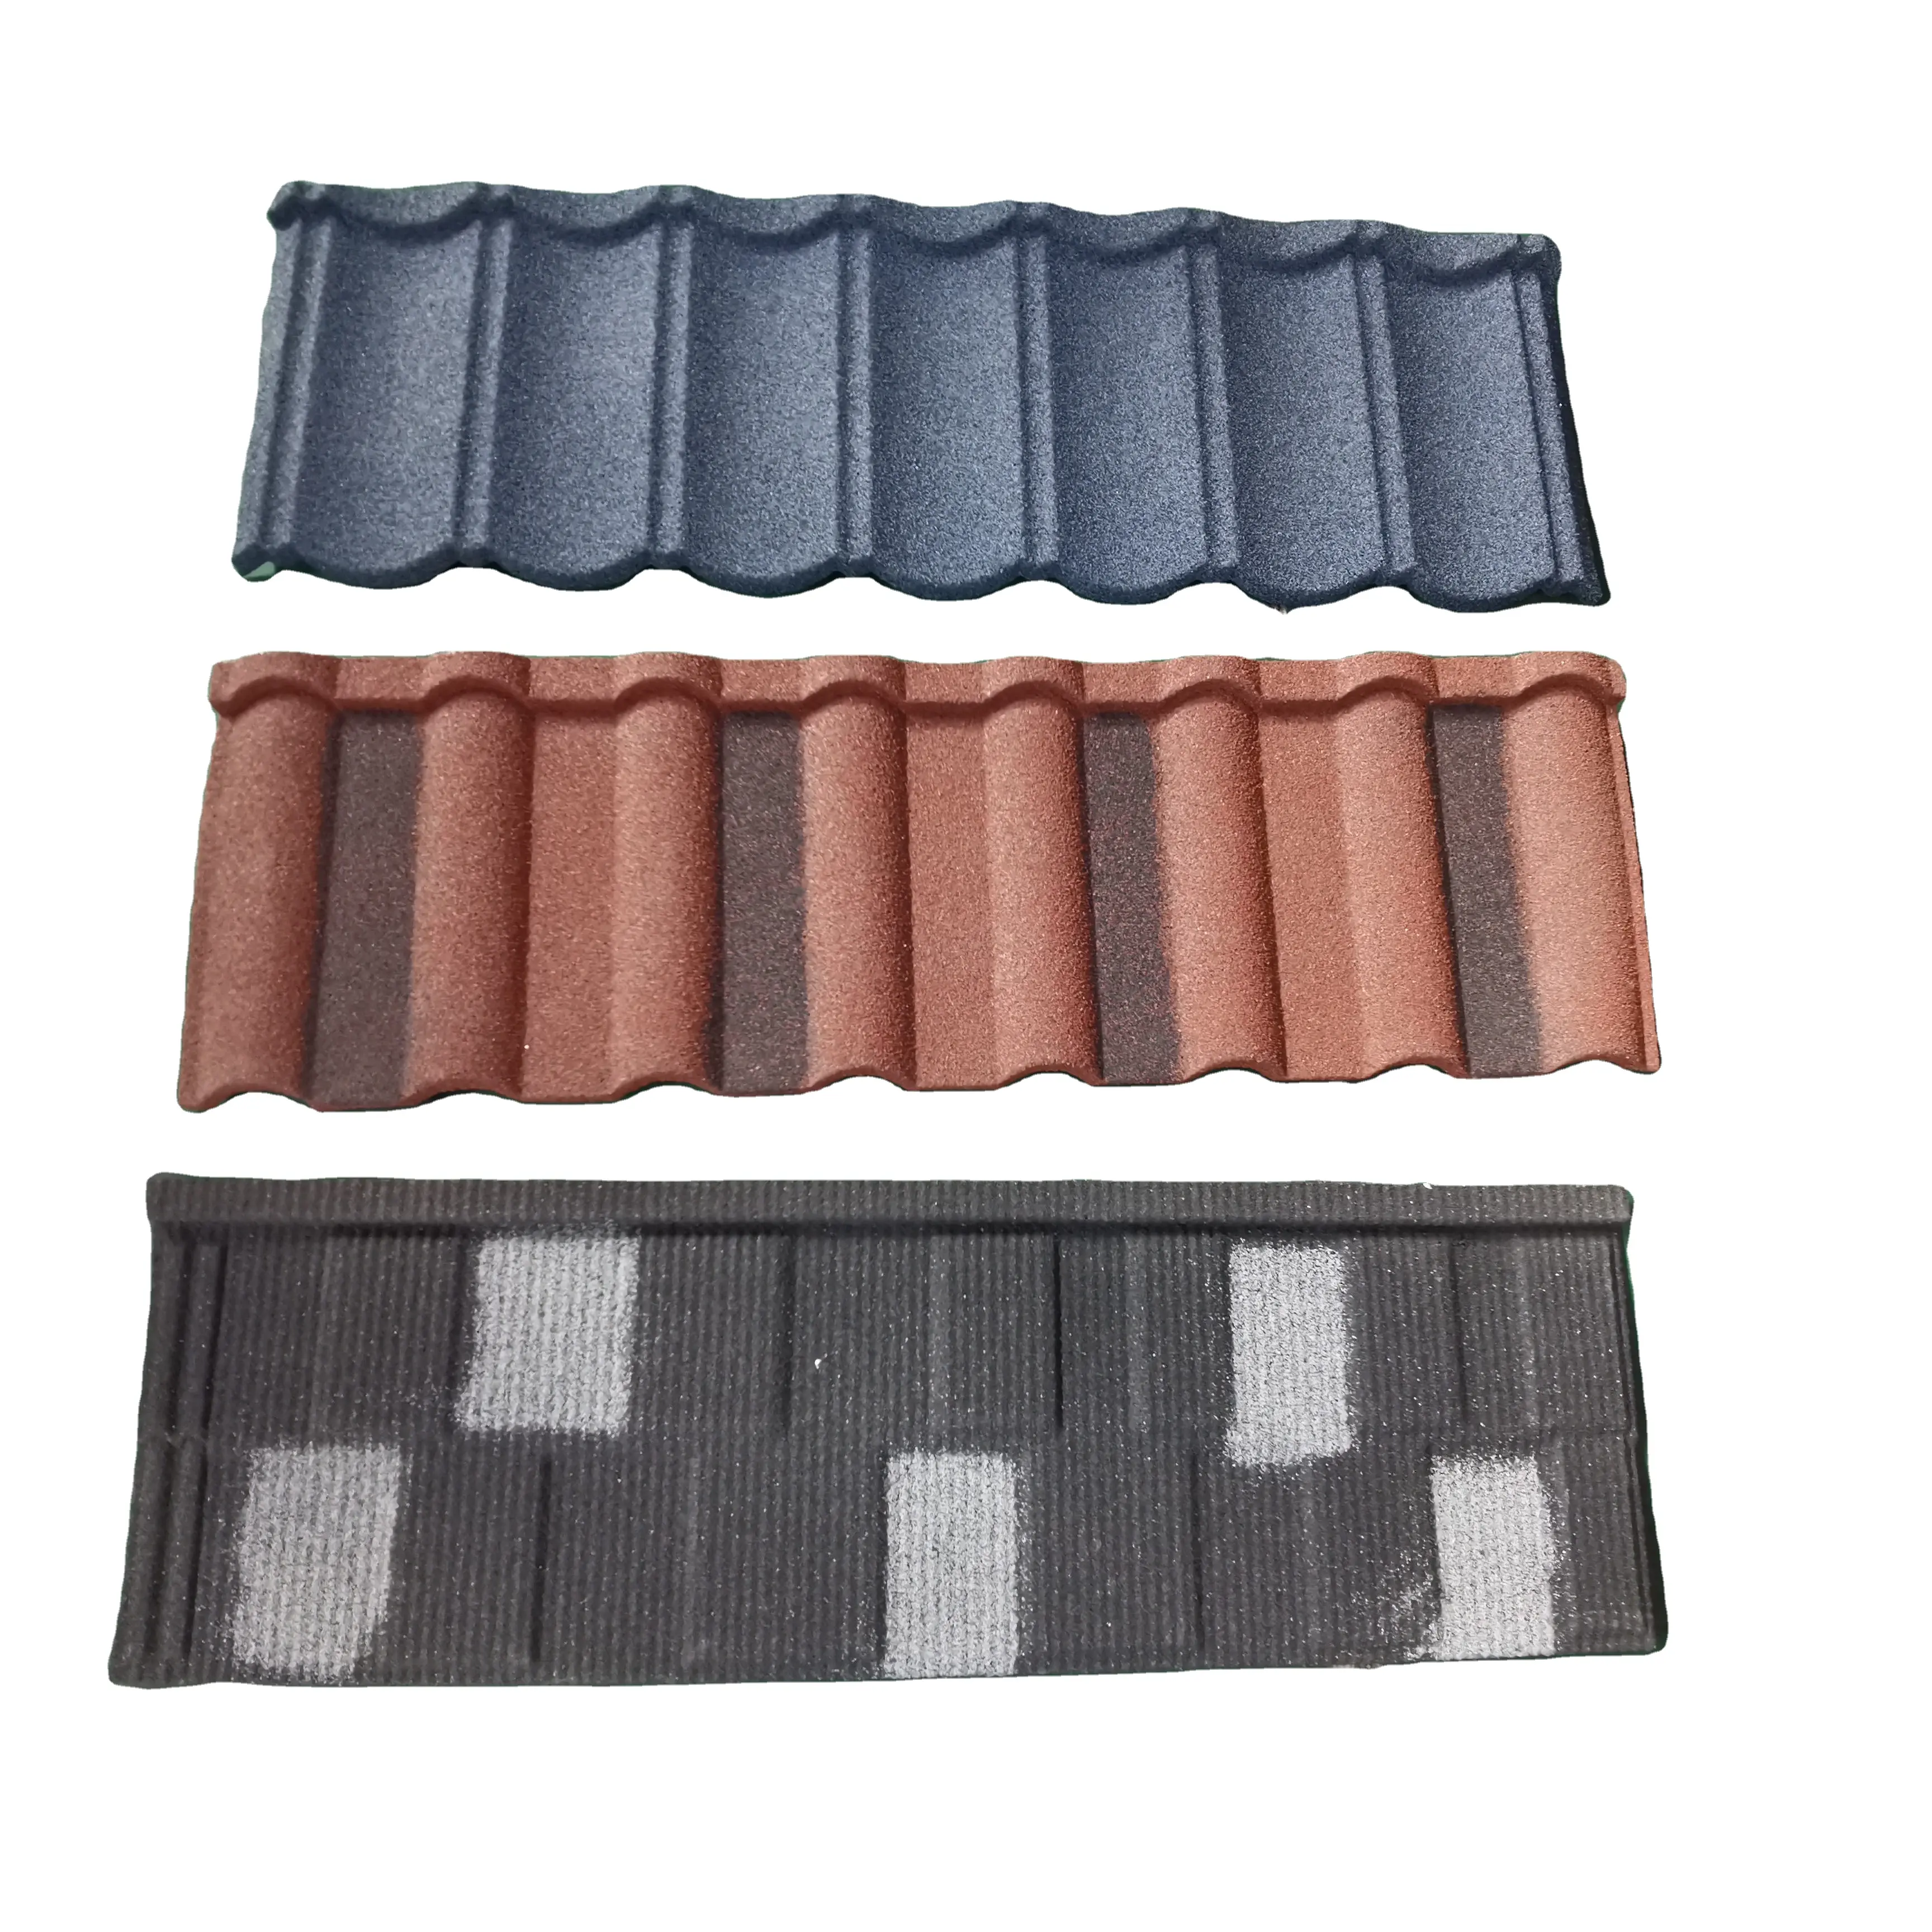 Chapas de metal revestidas de pedra para telhados, telhas de aço coloridas, material de construção com melhor preço na China